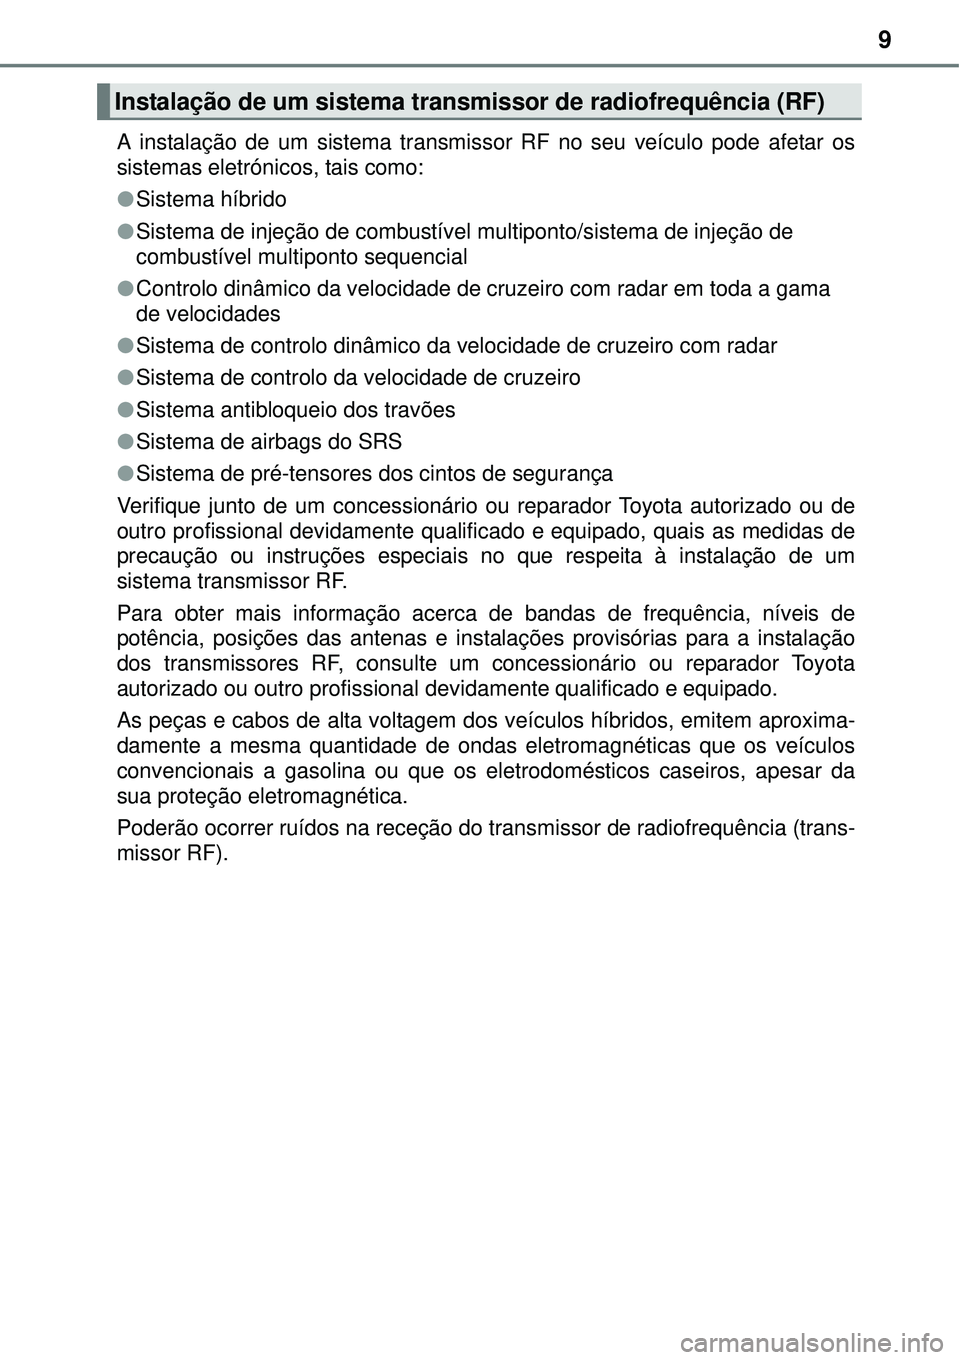 TOYOTA PRIUS 2015  Manual de utilização (in Portuguese) 9
A instalação de um sistema transmissor RF no seu veículo pode afetar os
sistemas eletrónicos, tais como:
lSistema híbrido
lSistema de injeção de combustível multiponto/sistema de injeção d